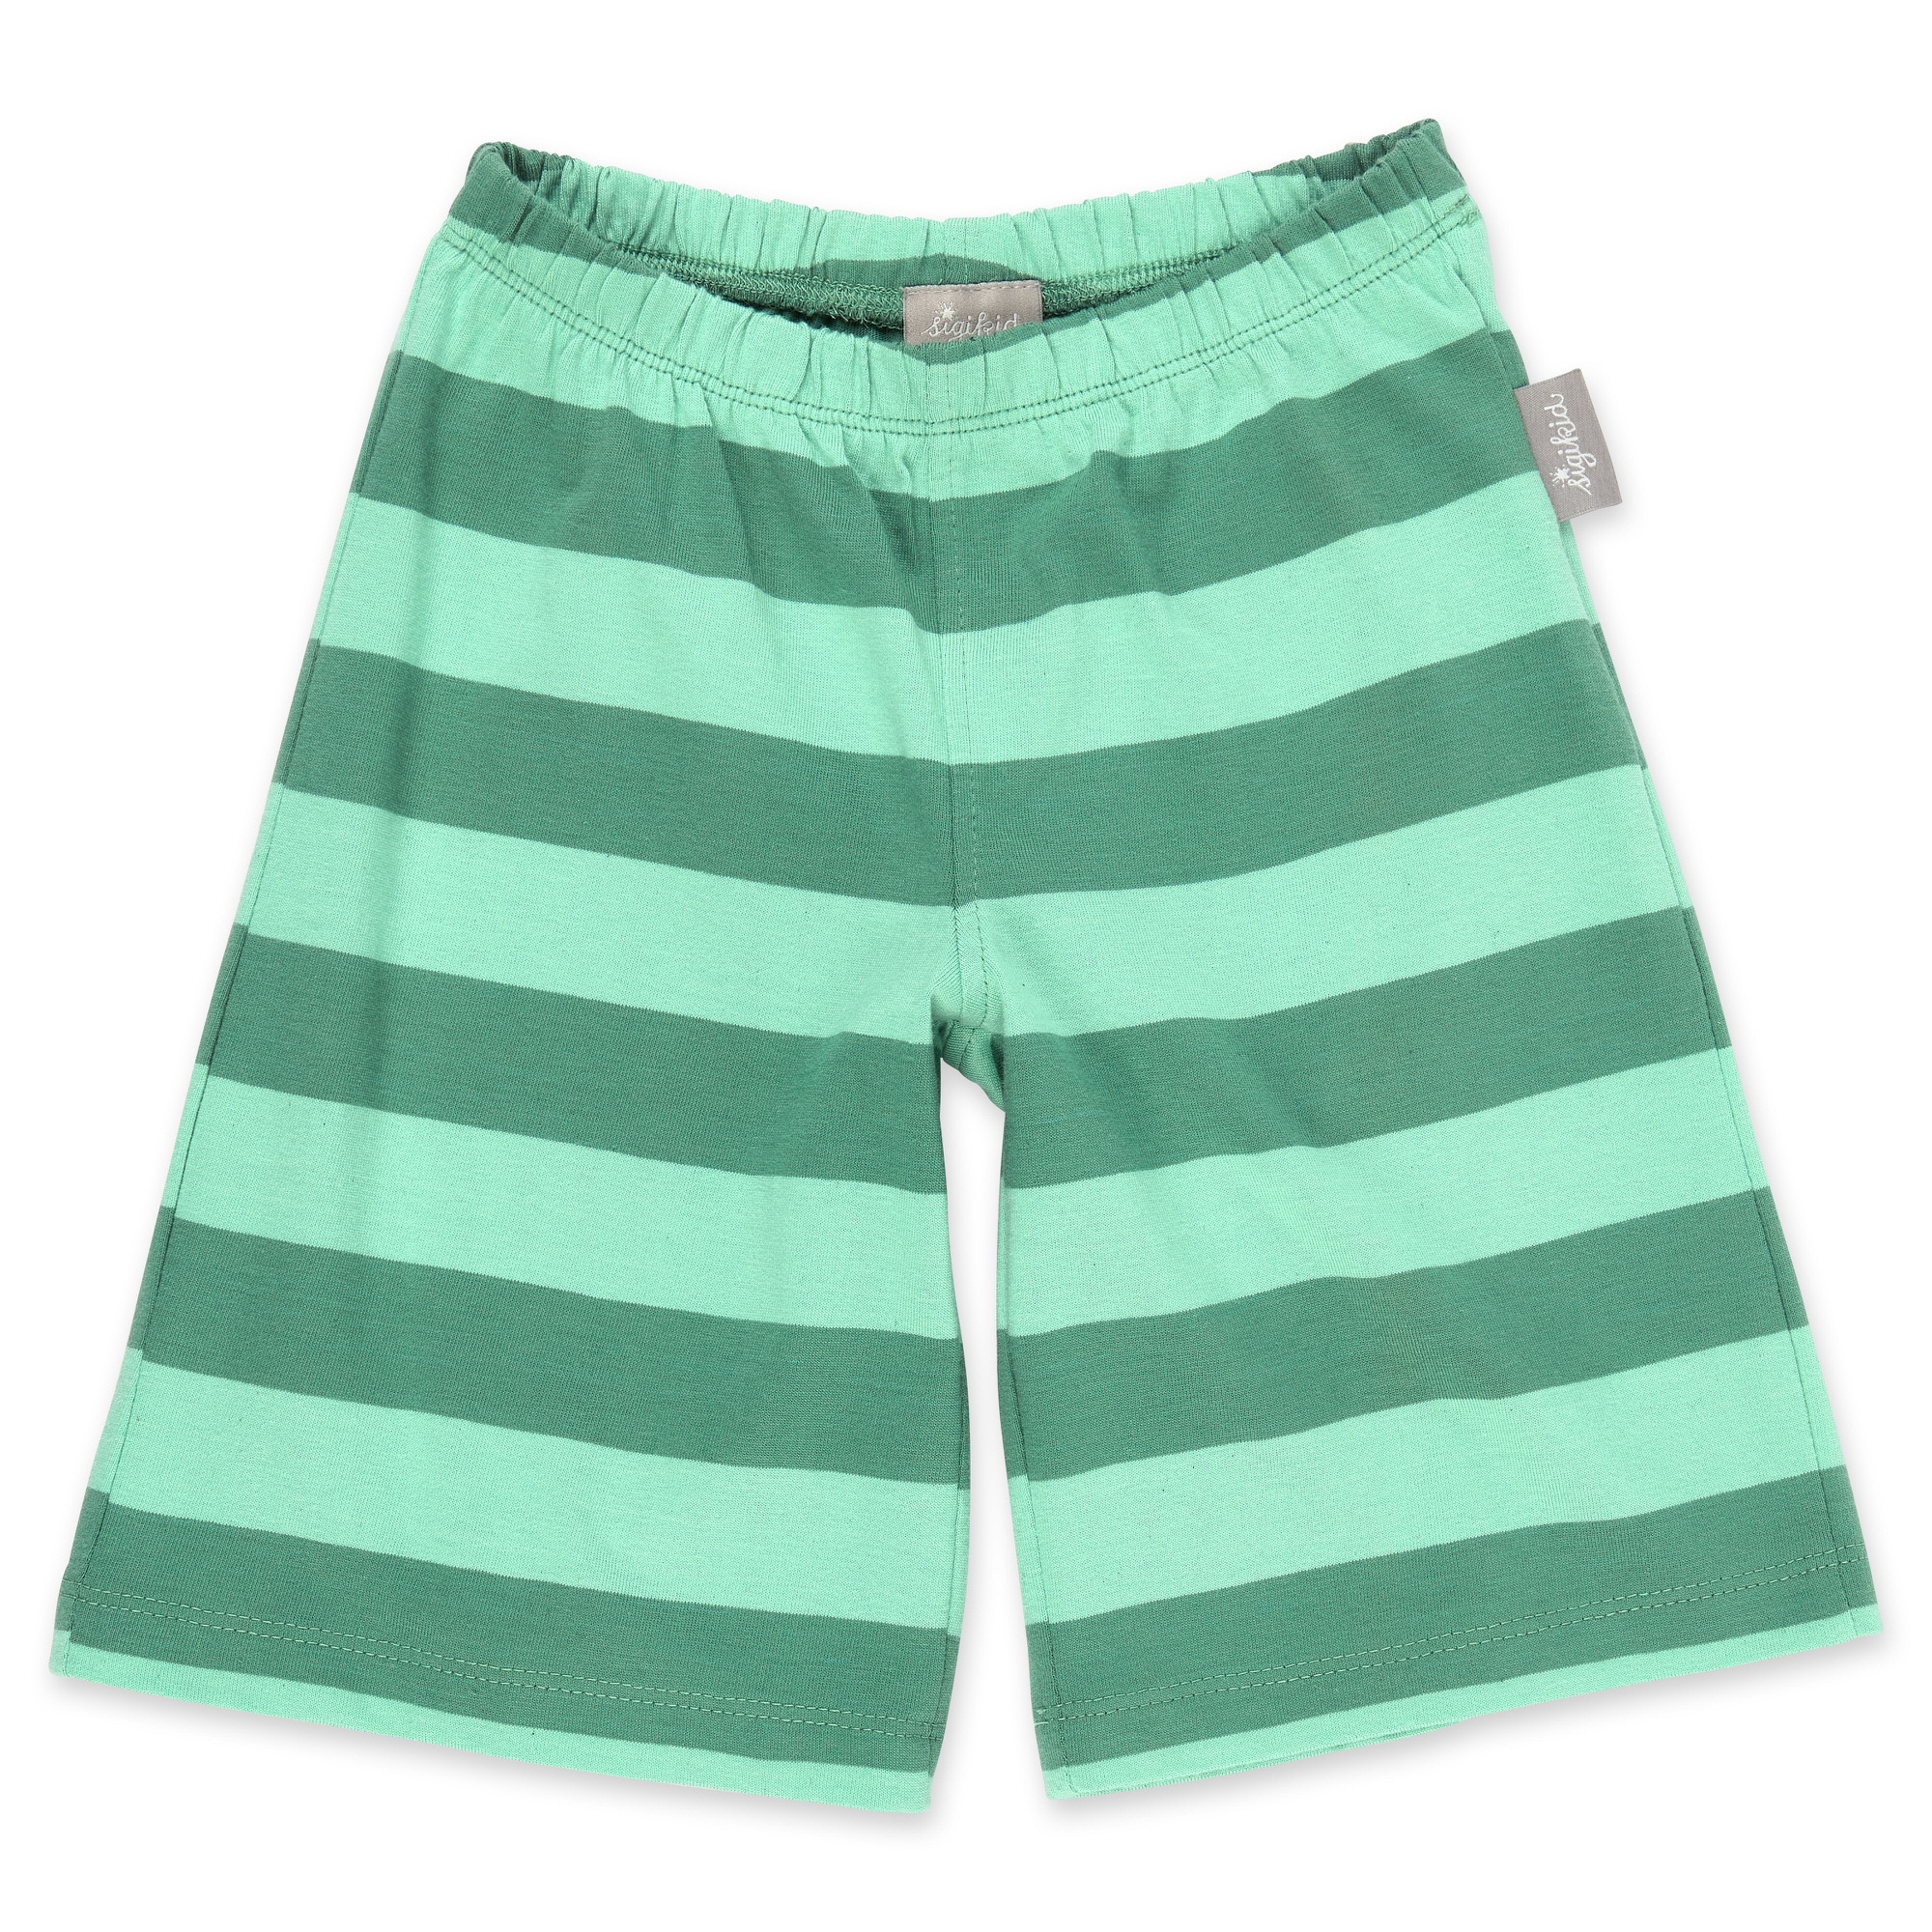 Kurzer Kinder Sommer Schlafanzug Dino, grün